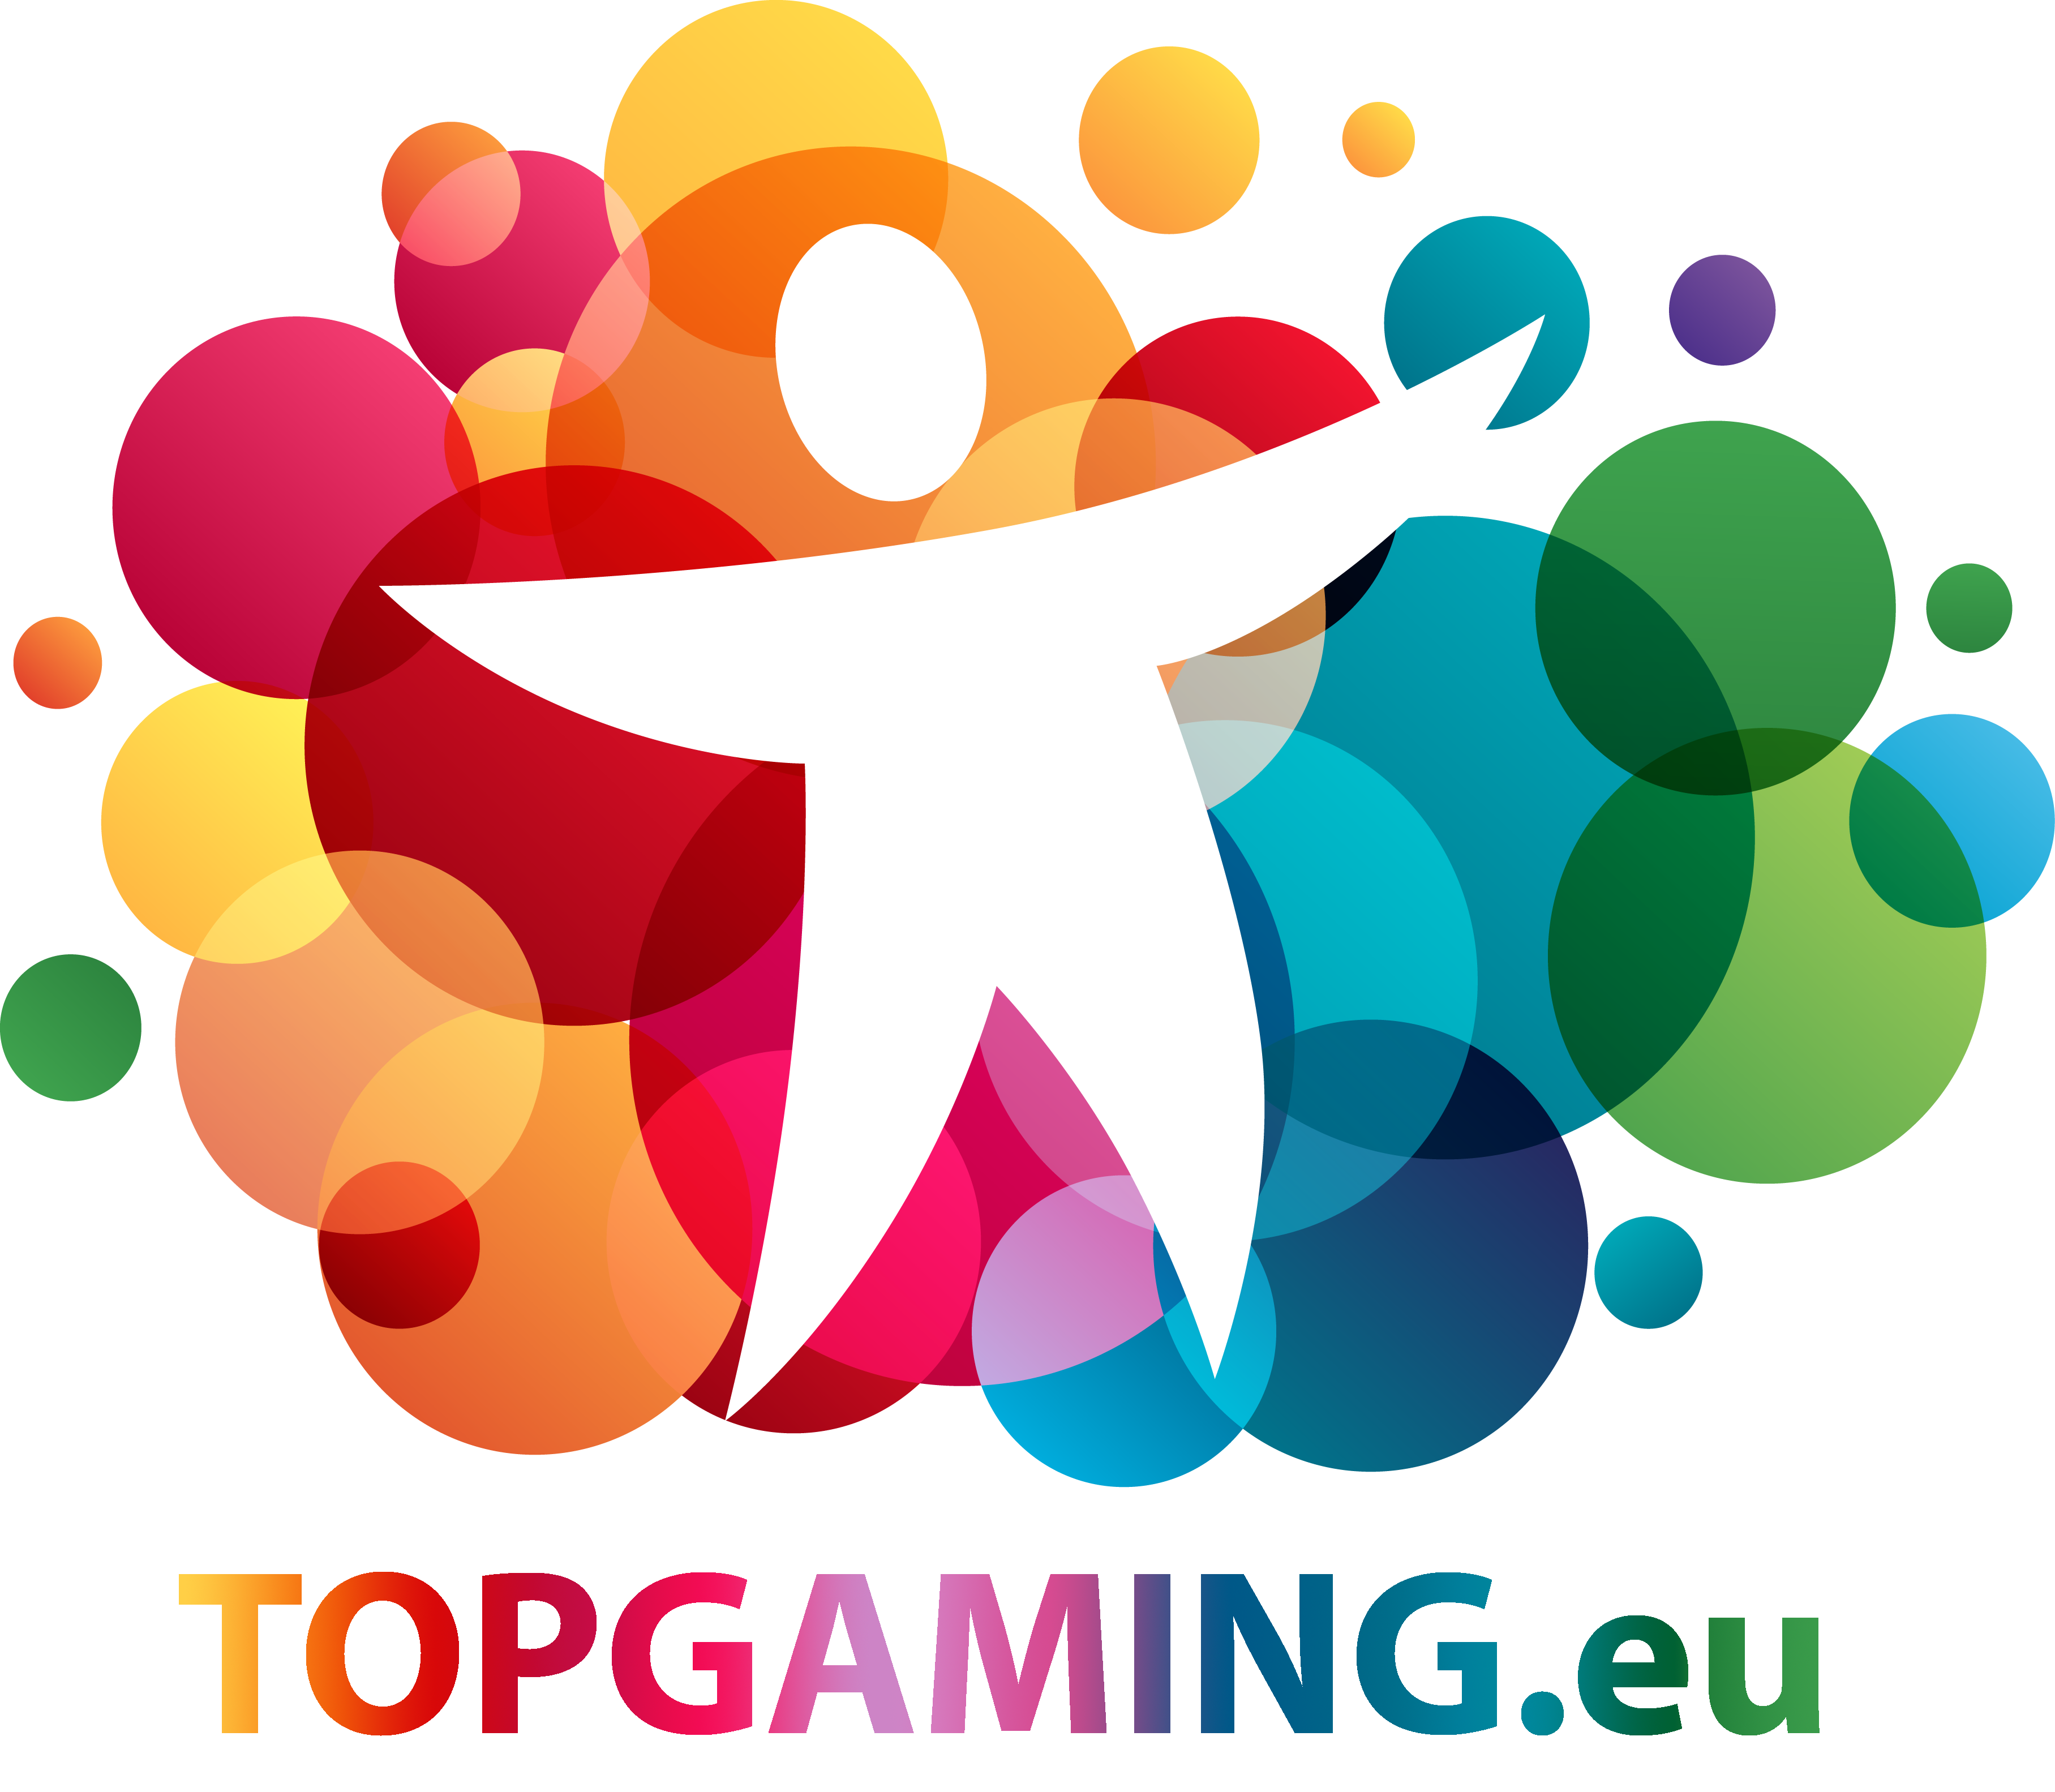 TOP_GAMING_EU.png